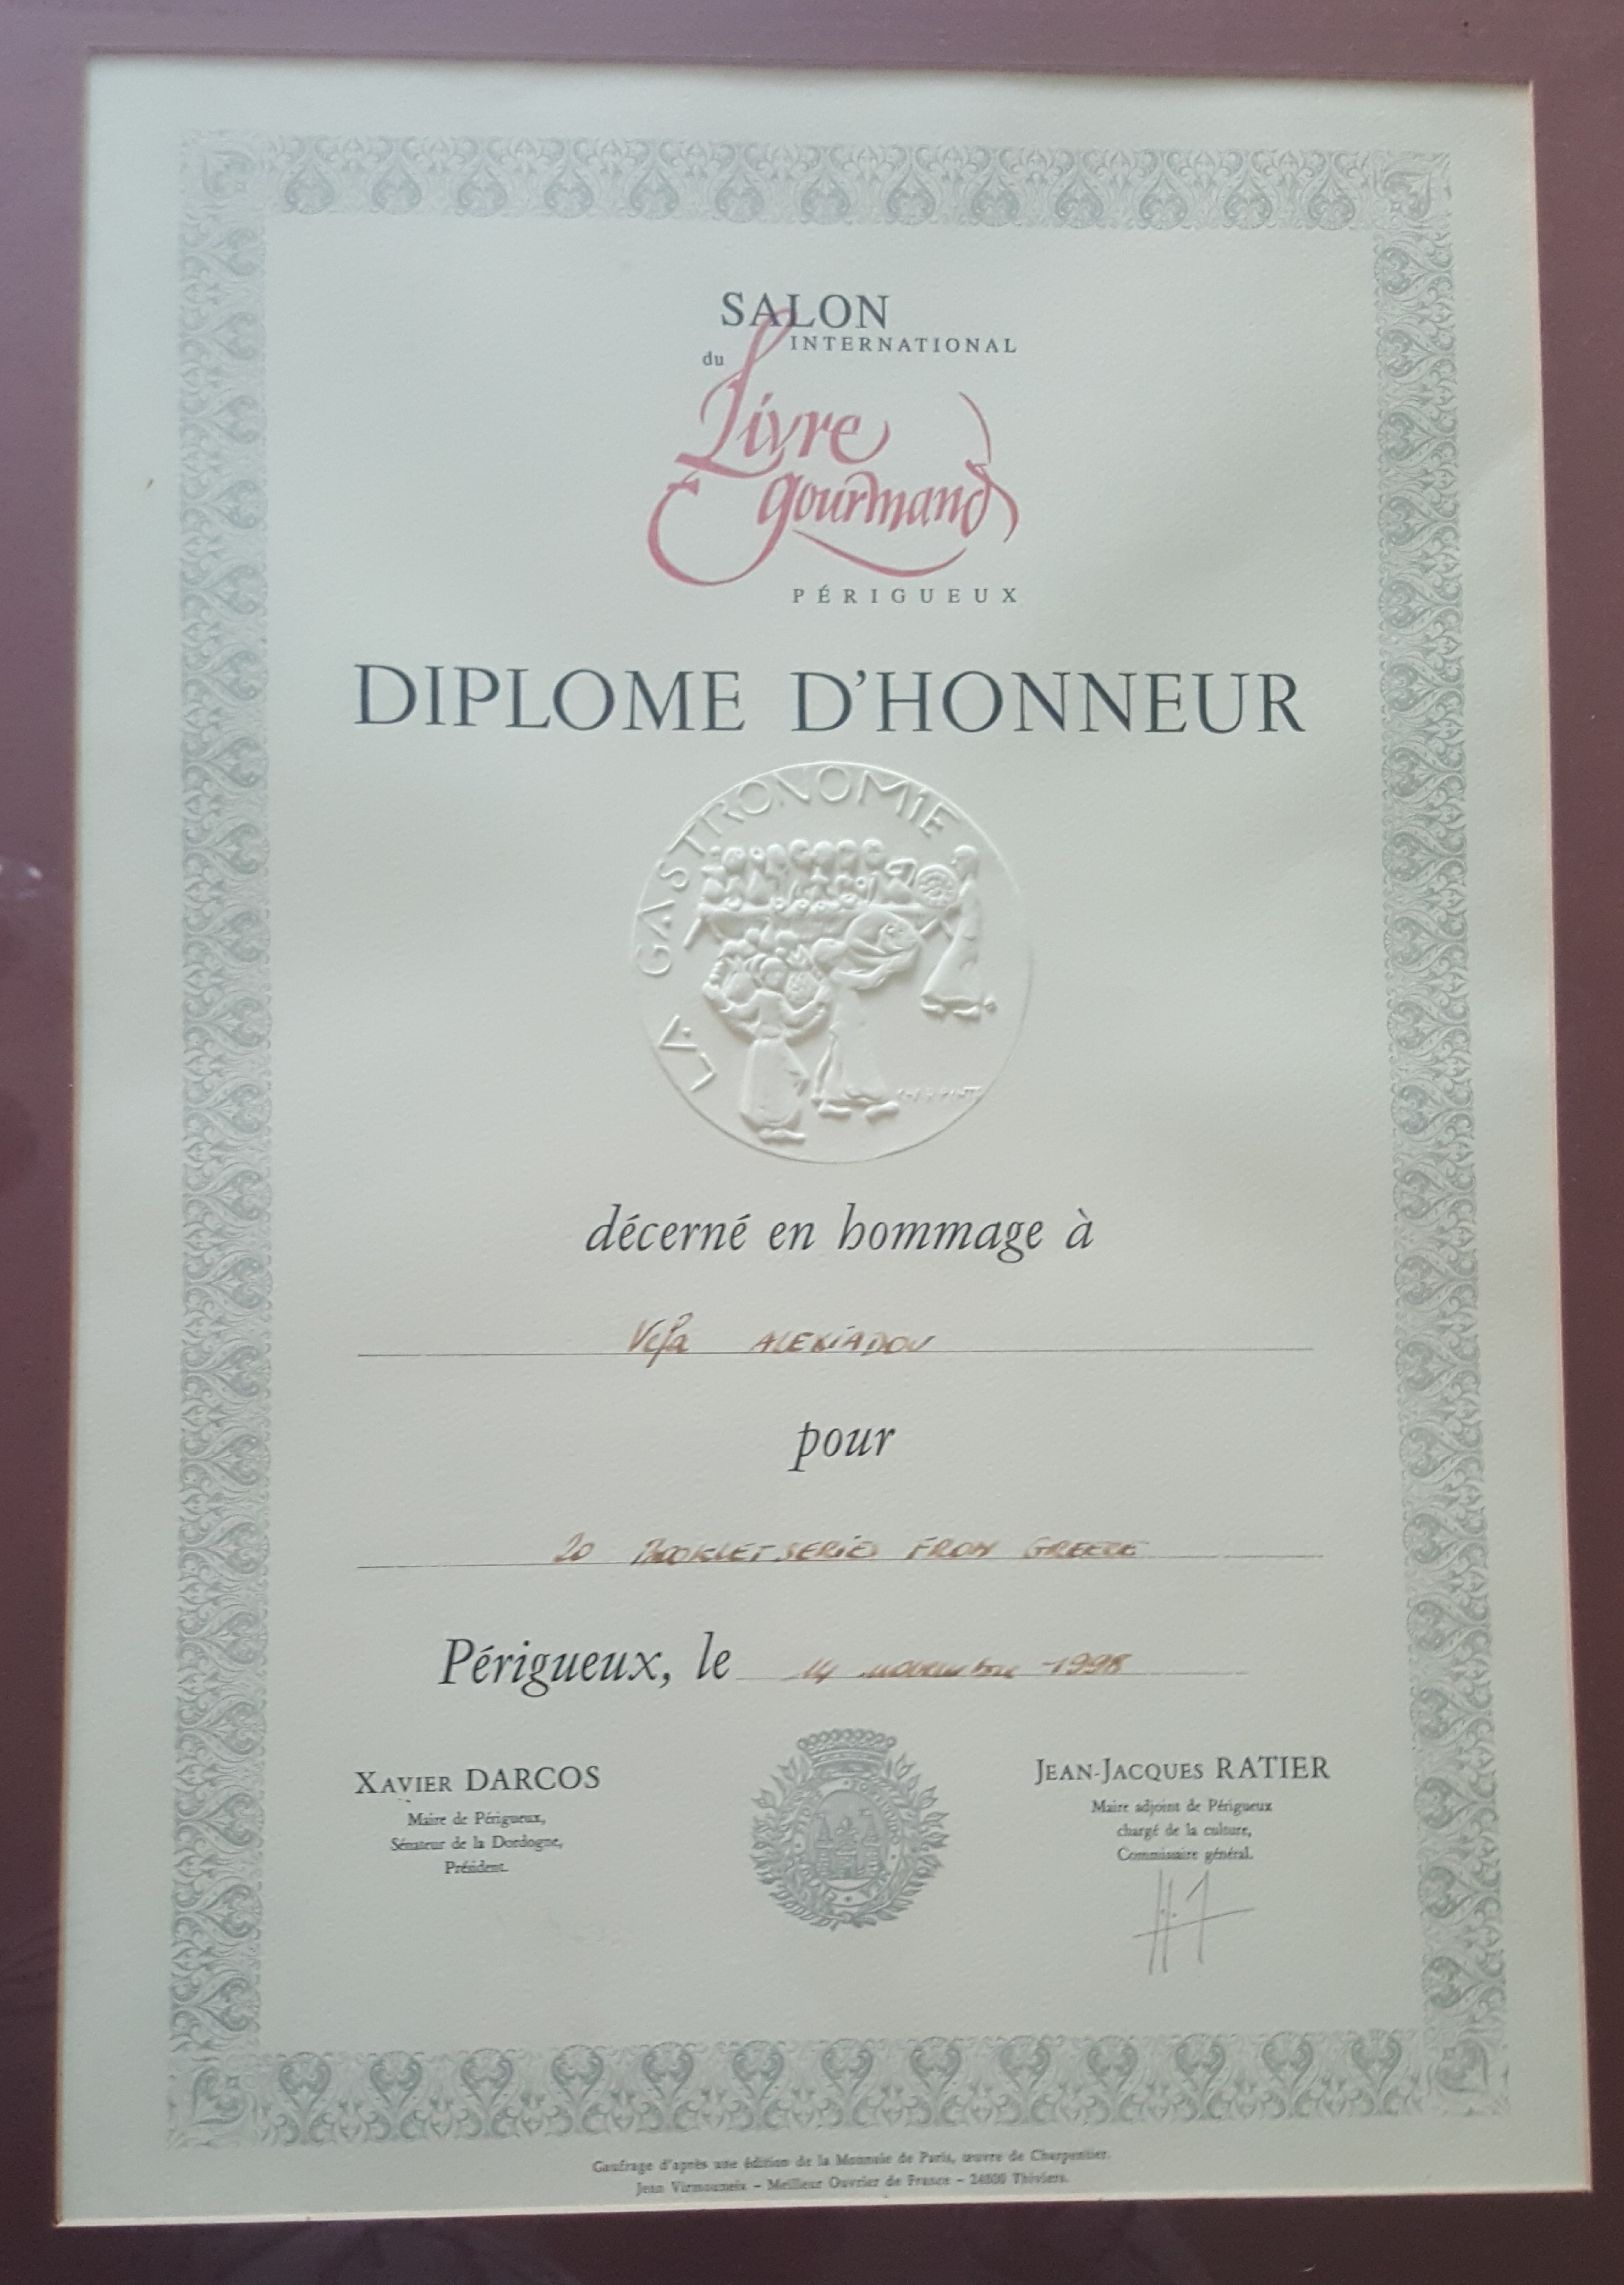 ΒΕΦΑ ΑΛΕΞΙΑΔΟΥ PERIGUEUX 1998 Gurmand Awards certificate vefaalexiadou cookbooks & blog vefaalexiadou.gr